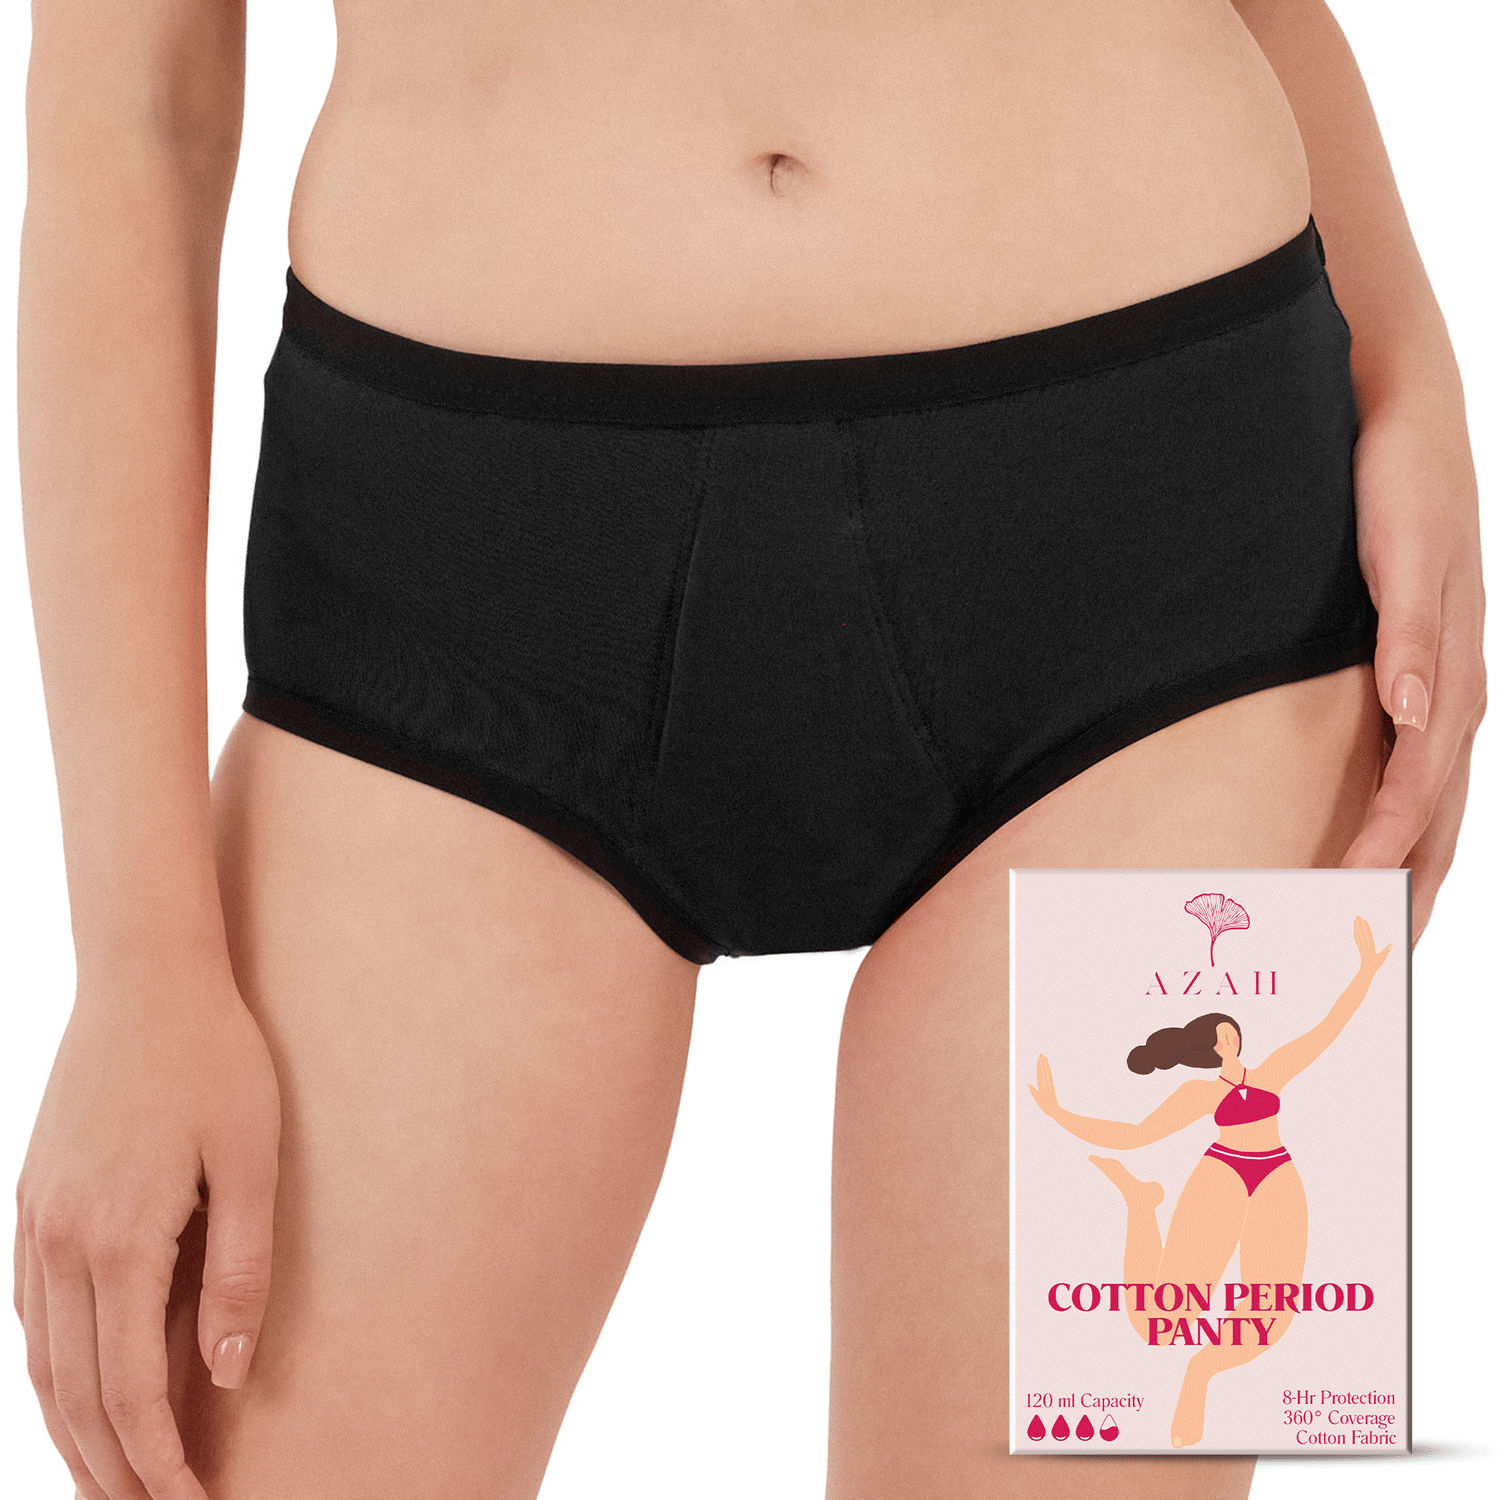 Buy Azah Period Panties For Women - Leak Proof, Breathable Panties